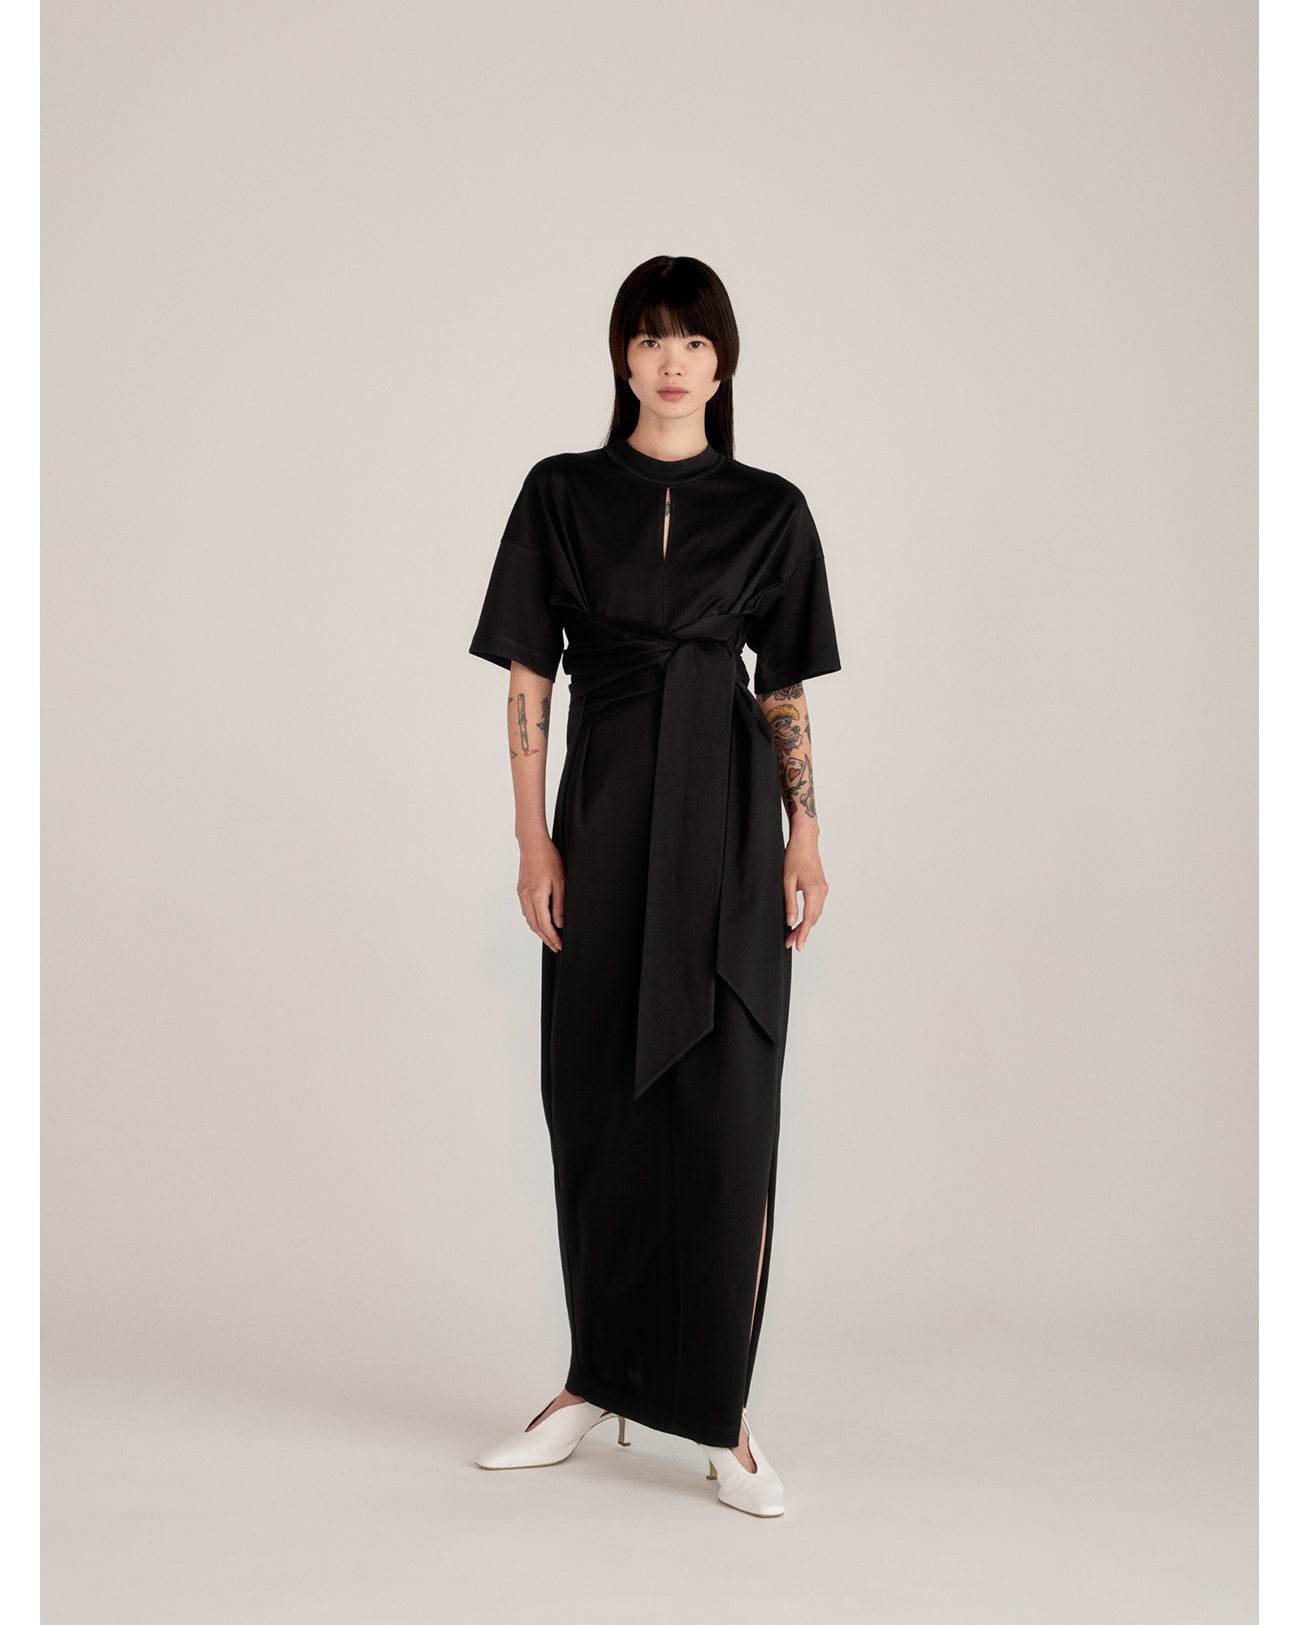 カラーブラックマメクロゴウチMameKurogouchiコットンジャージードレス黒サイズ2